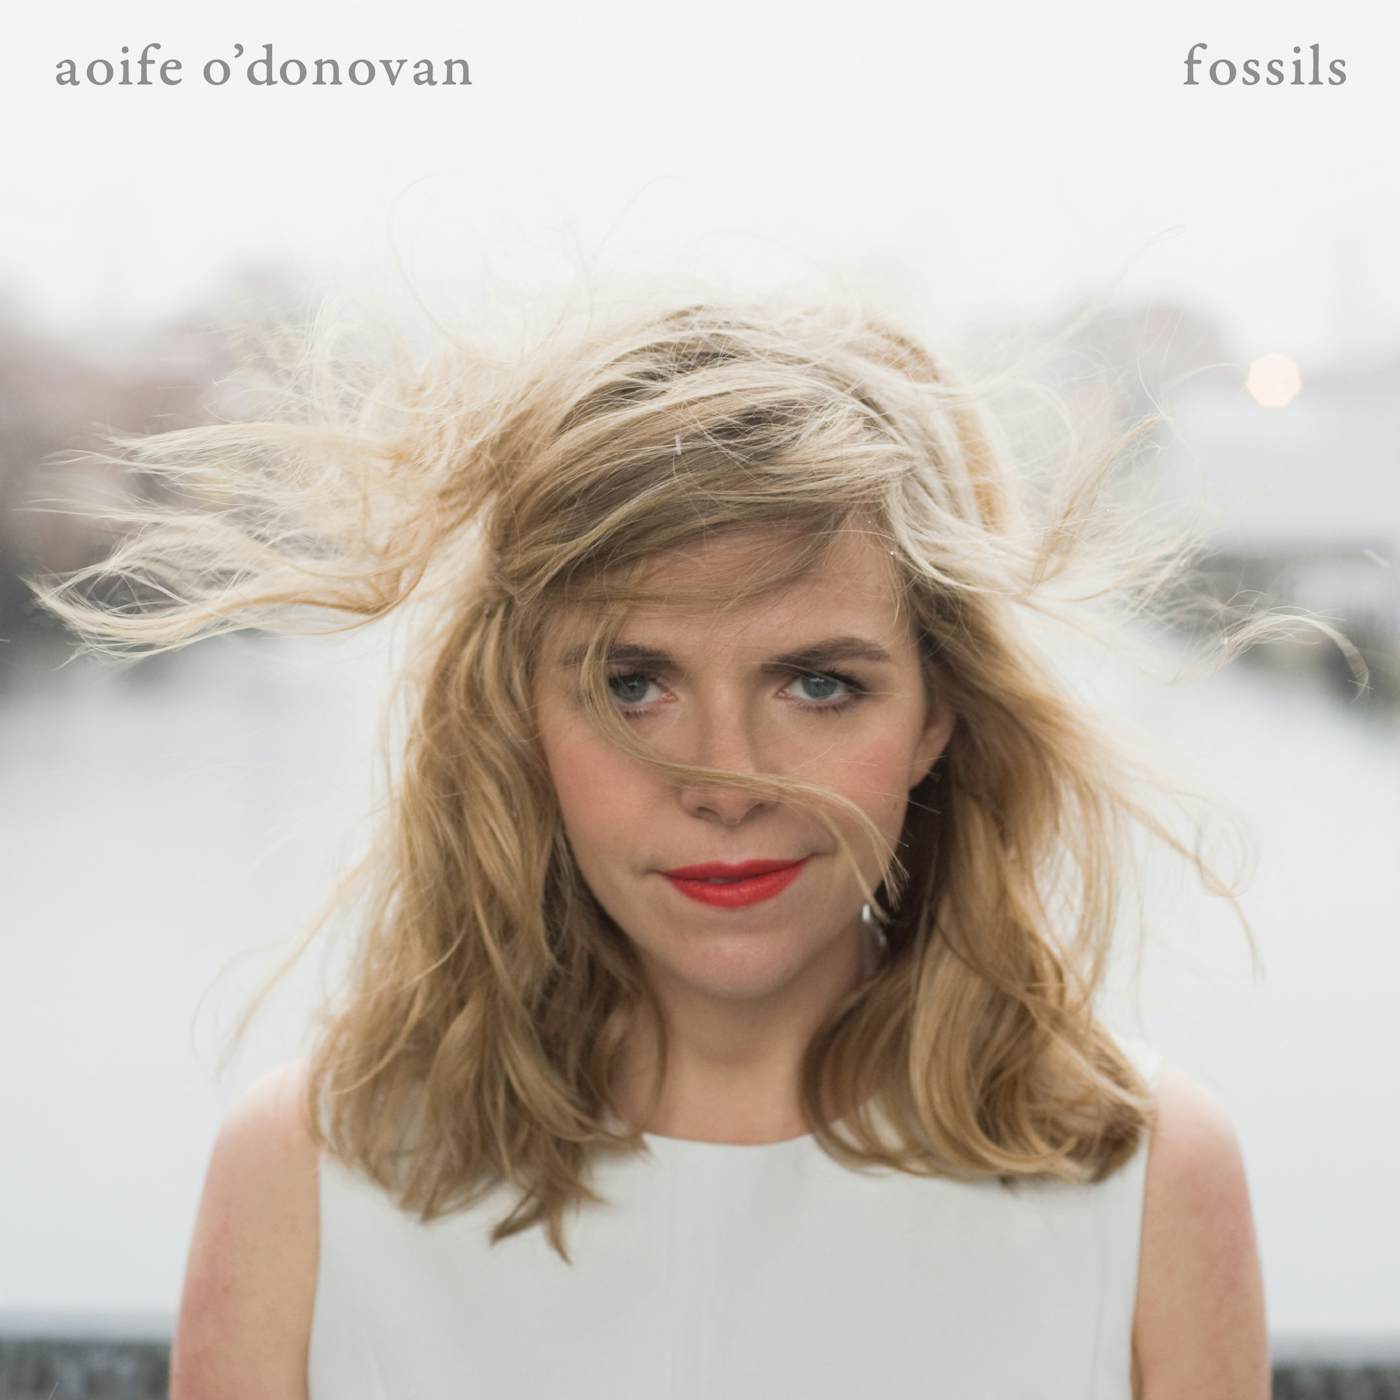 Aoife O'Donovan Fossils Vinyl Record